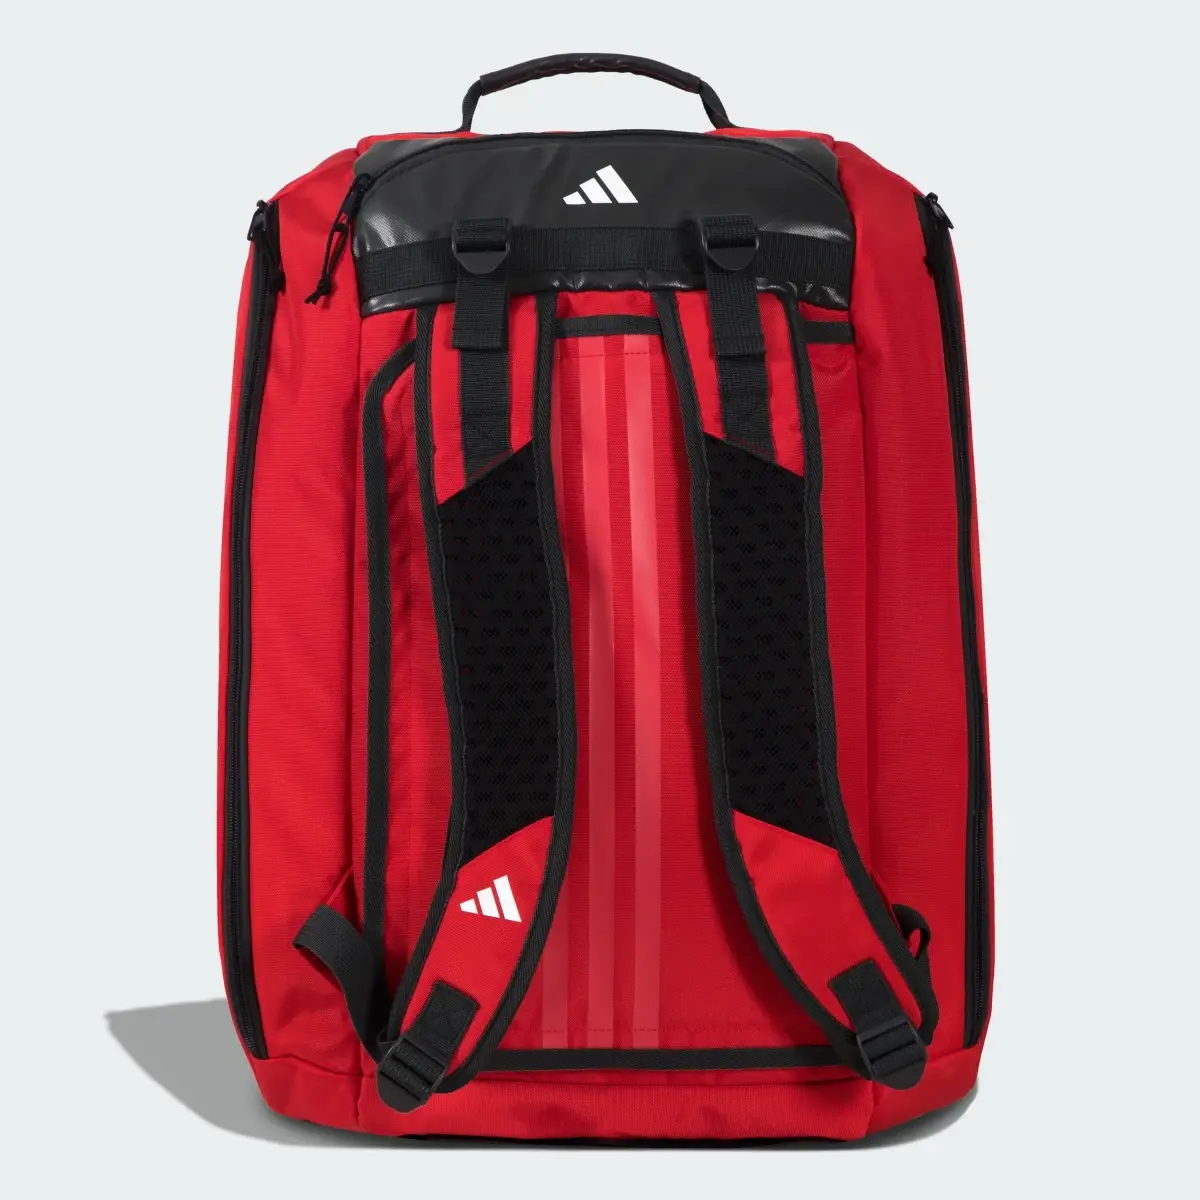 Adidas RACKET BAG TOUR S RED 3.3. 3